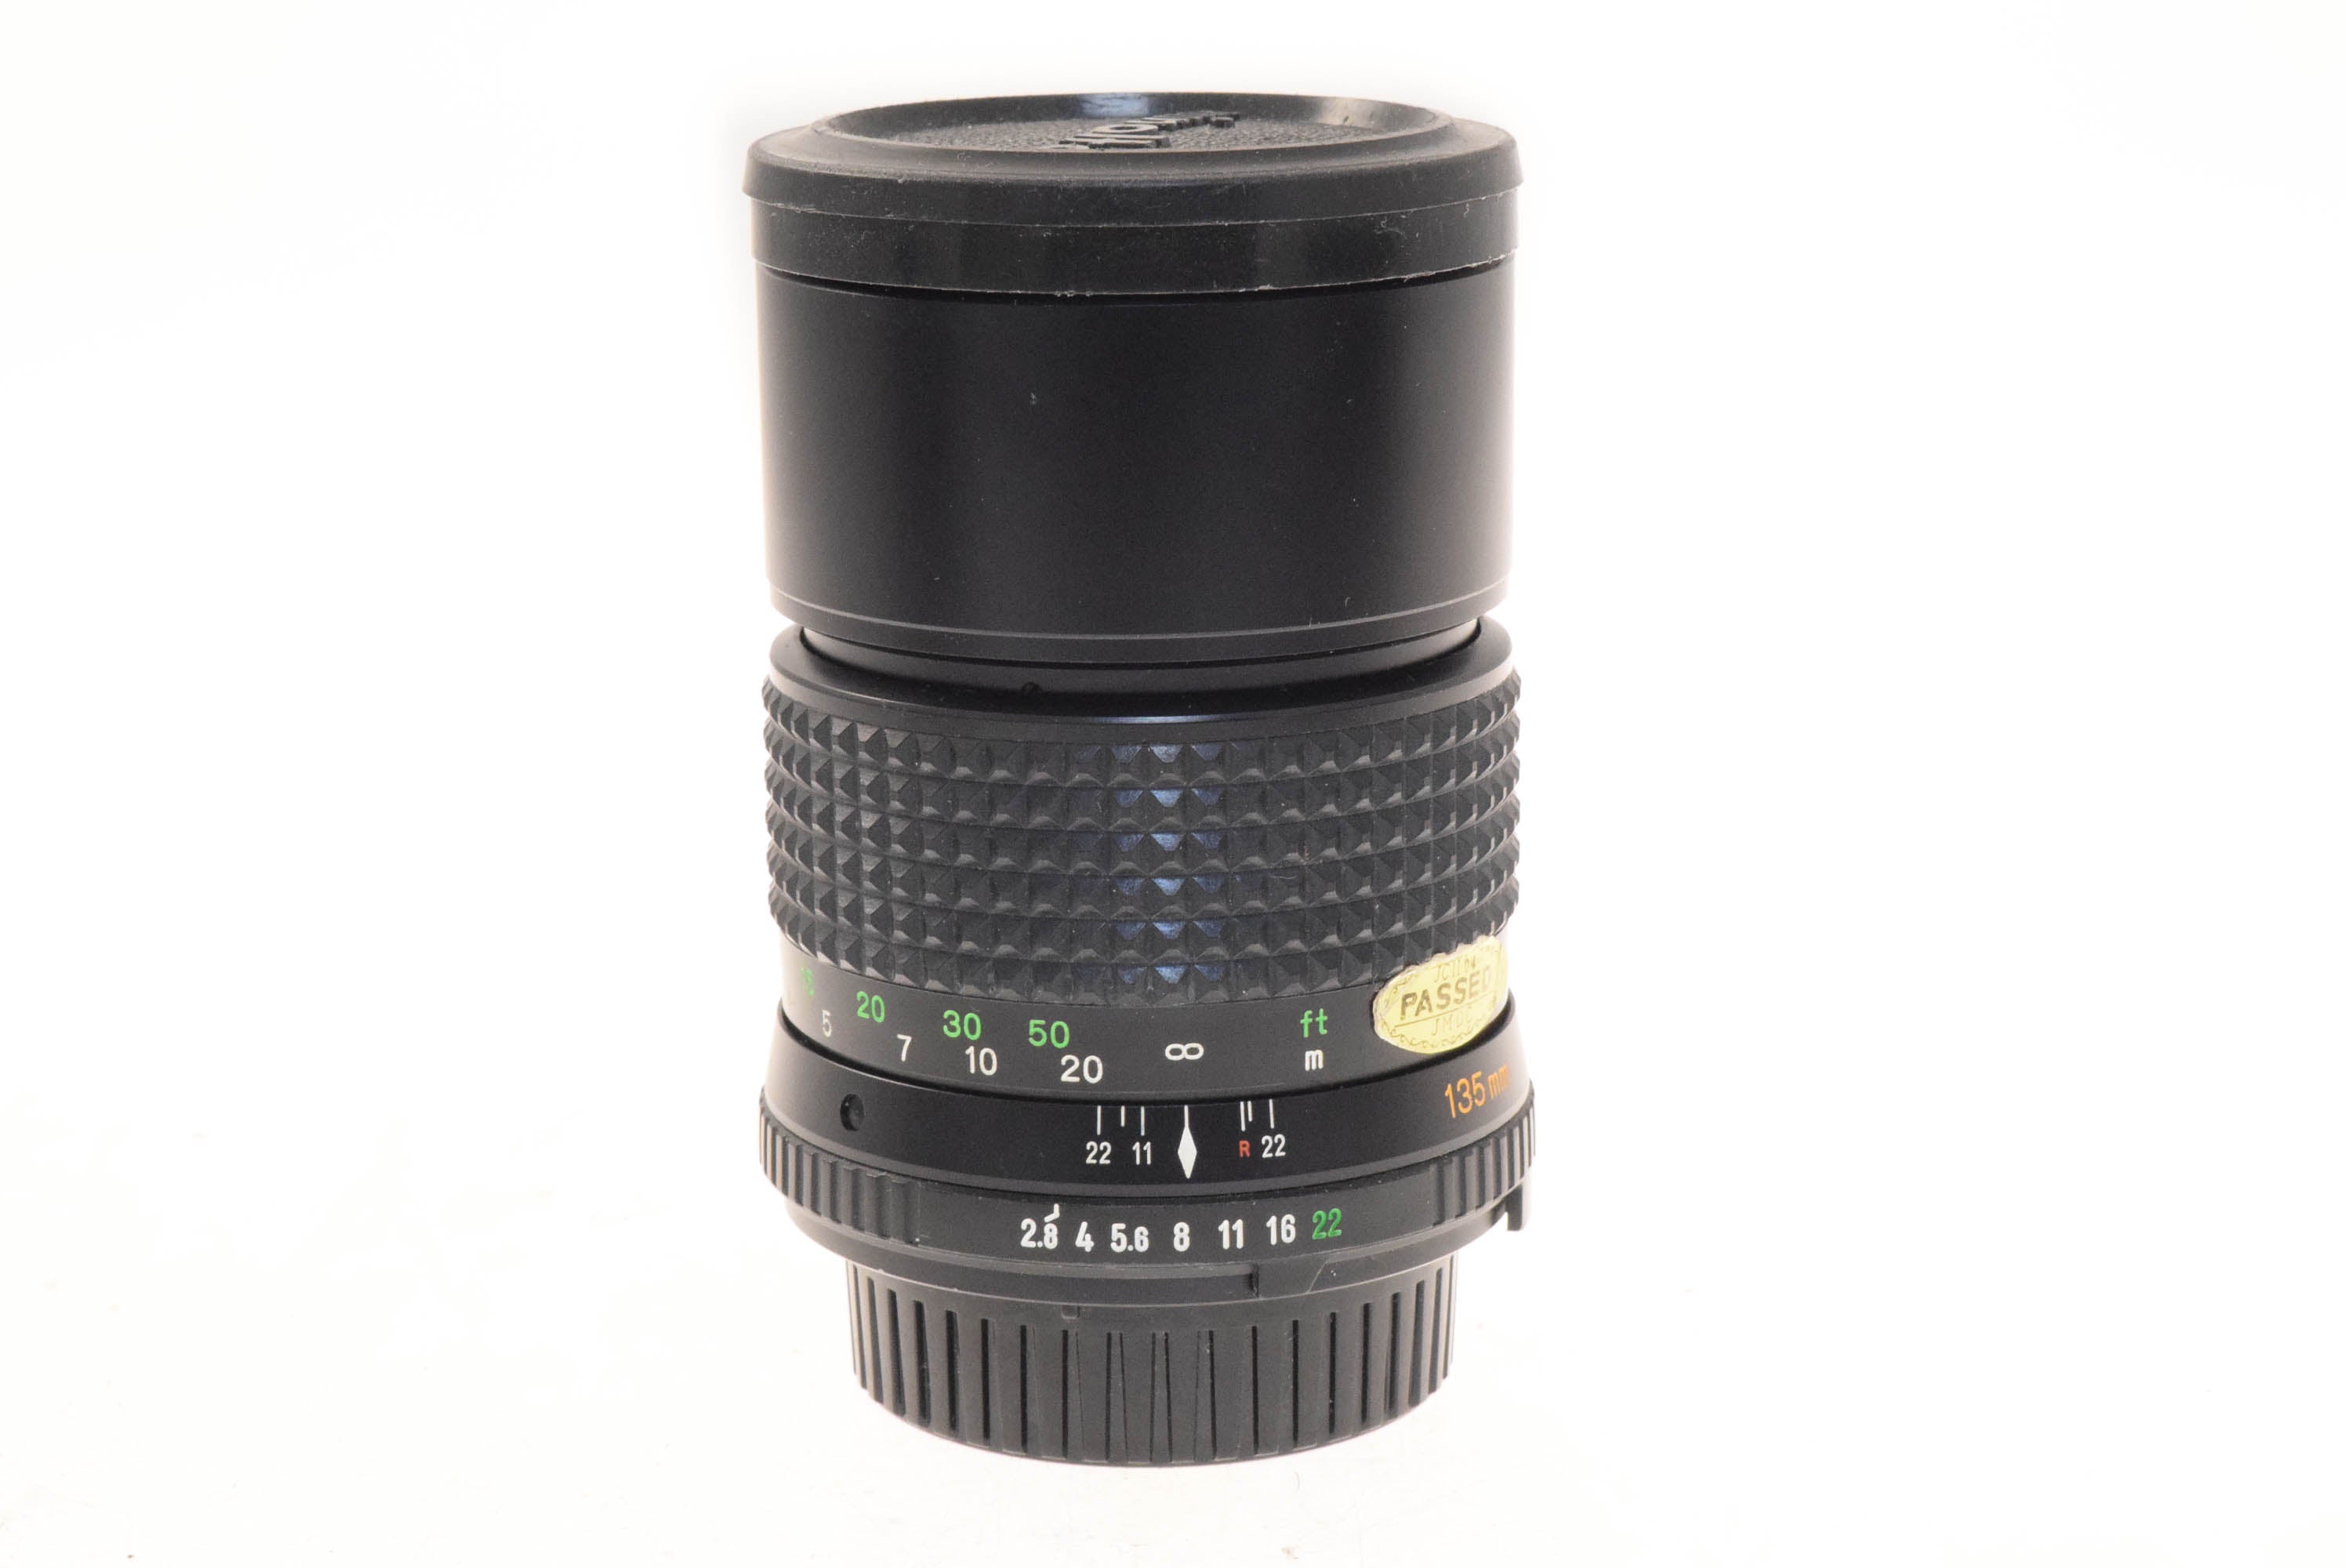 Minolta 135mm f2.8 MD Tele Rokkor - Lens